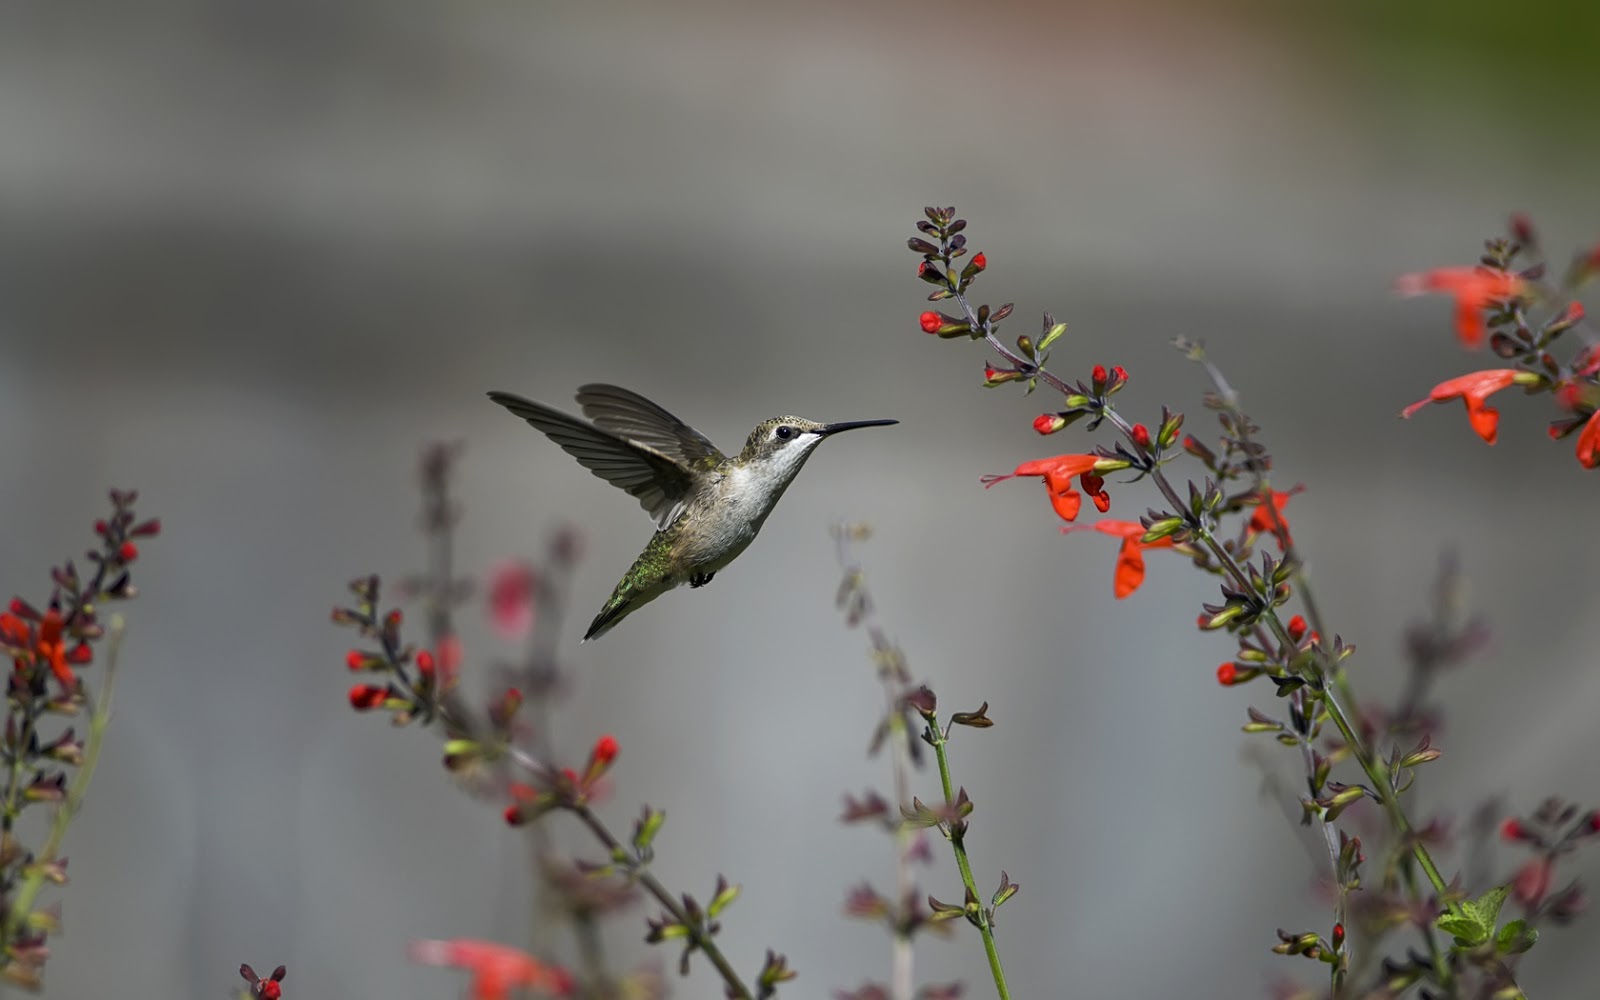 Little Hummingbird And Flowers Hd Wallpaper - Hd Pc Wallpaper Hummingbirds , HD Wallpaper & Backgrounds